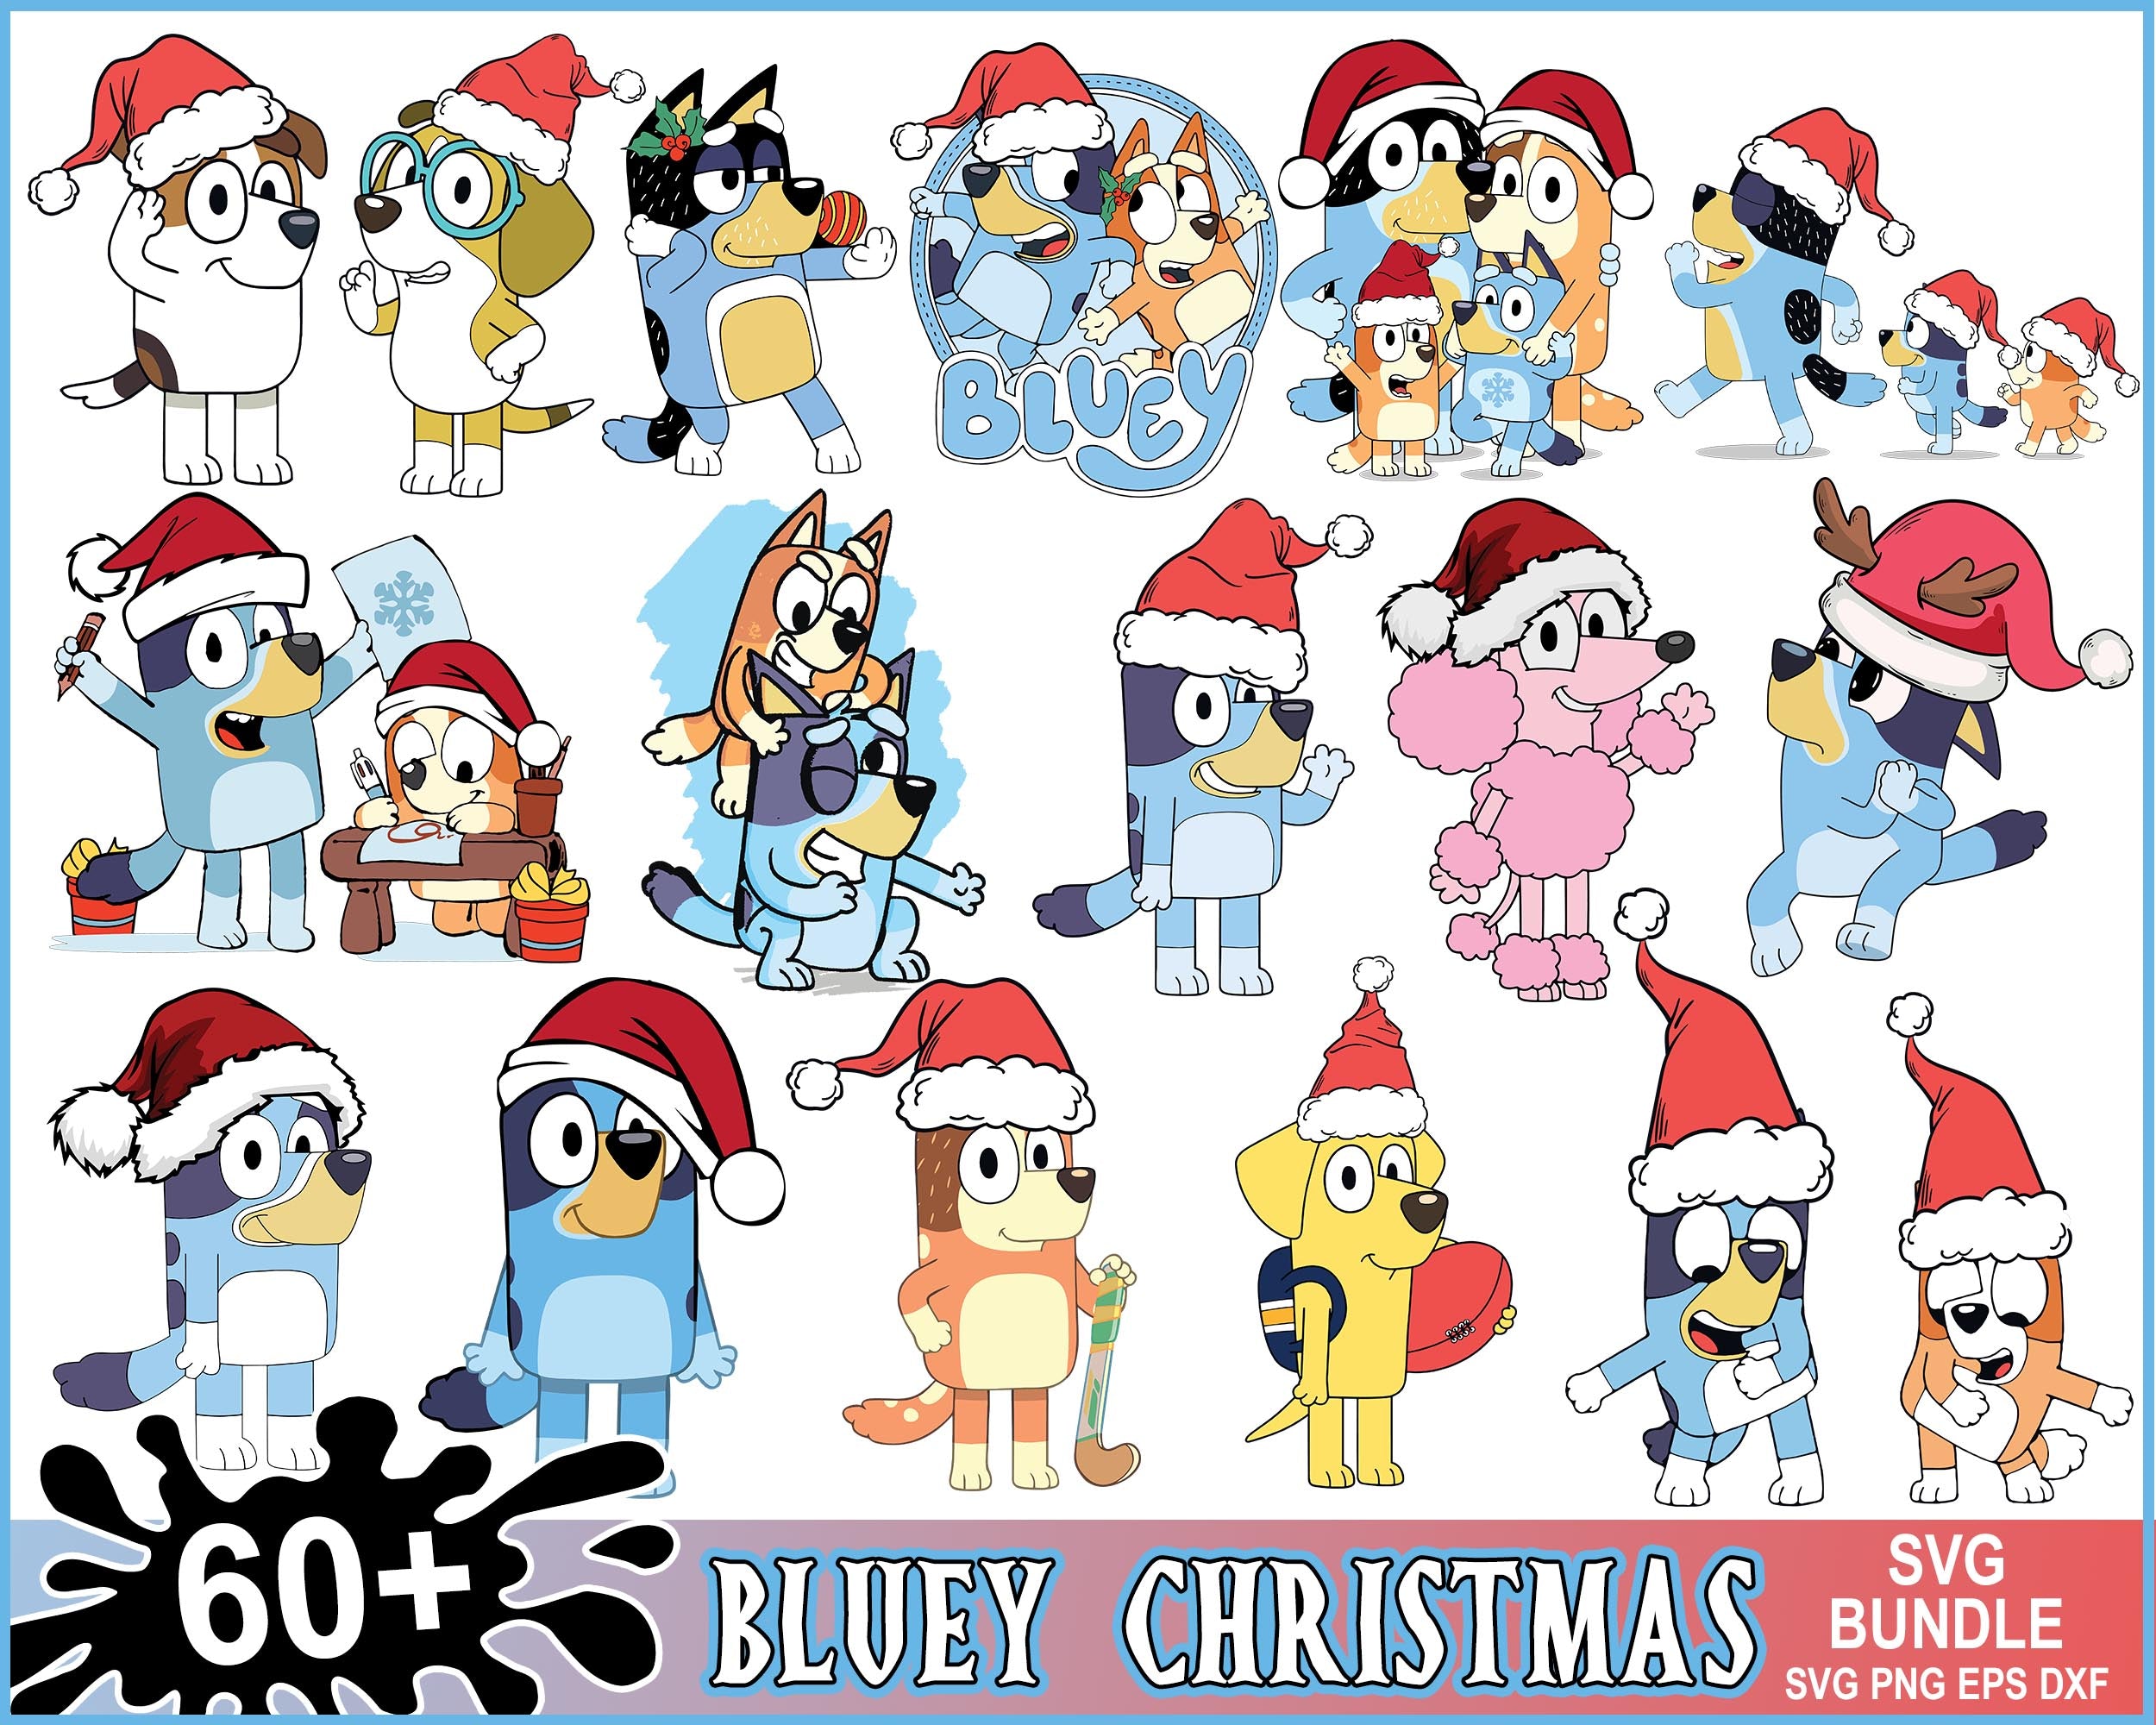 Version 2.0 - 60+ Bluey Christmas svg bundle, Bluey 2022 vector, Bluey Xmas png, bluey cutfile, bluey clipart, bluey eps, dxf bundle